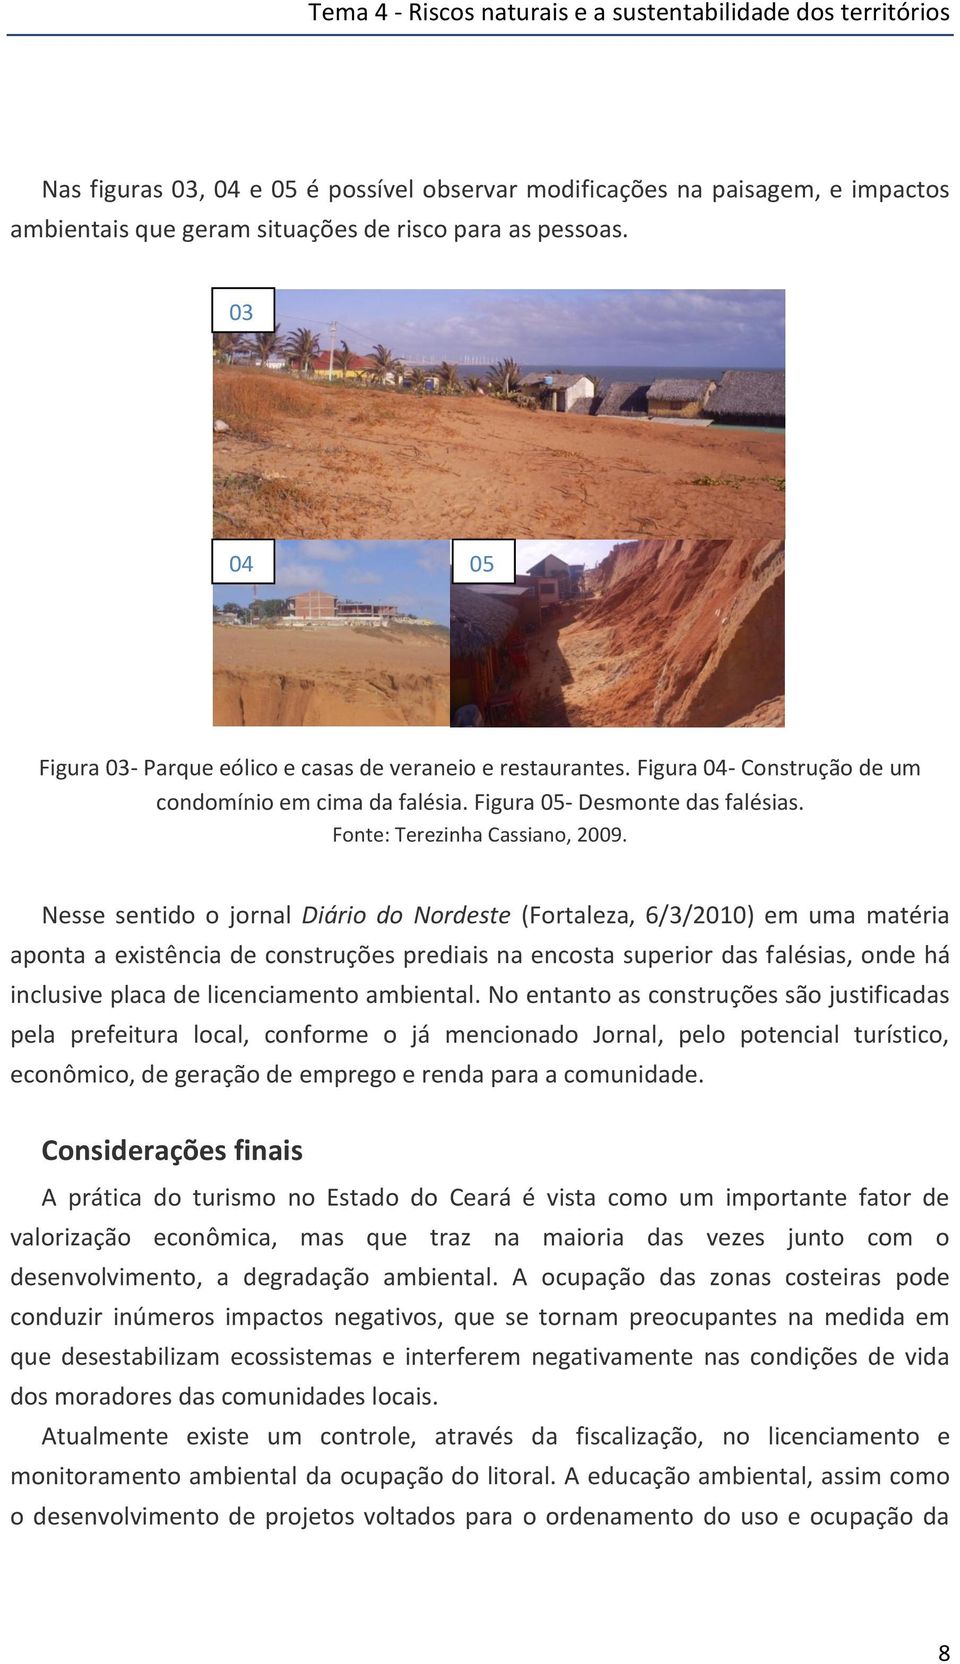 Nesse sentido o jornal Diário do Nordeste (Fortaleza, 6/3/2010) em uma matéria aponta a existência de construções prediais na encosta superior das falésias, onde há inclusive placa de licenciamento